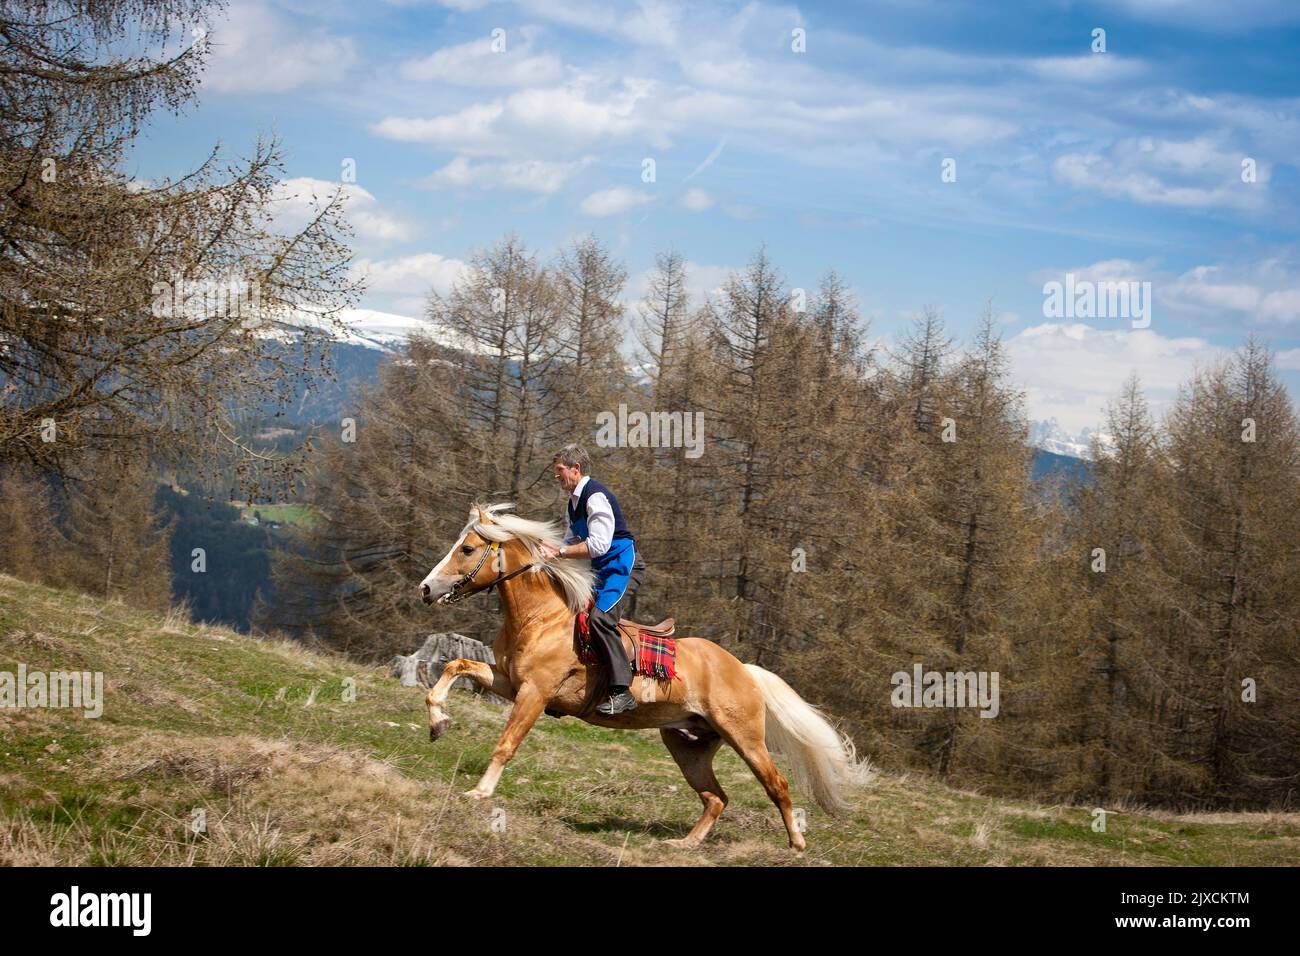 Haflinger caballo. Jinete en galopando semental en un pasto de montaña. Alemania Foto de stock